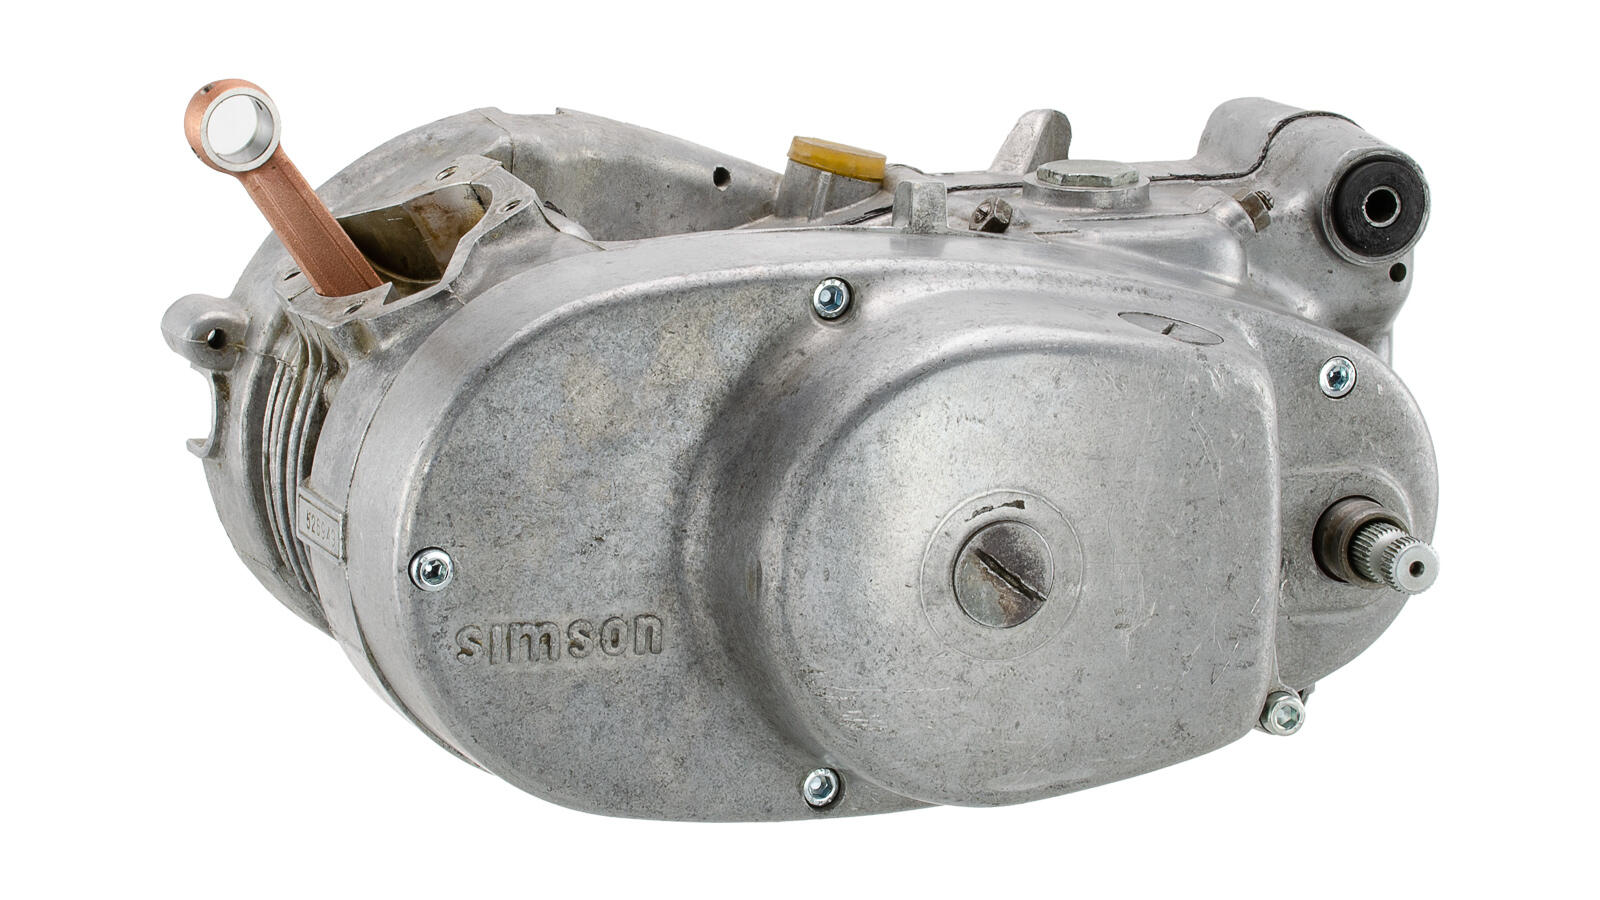 Motorregenerierung (Rumpfmotor) KR51/1S, DUO 4/1, Hycomat